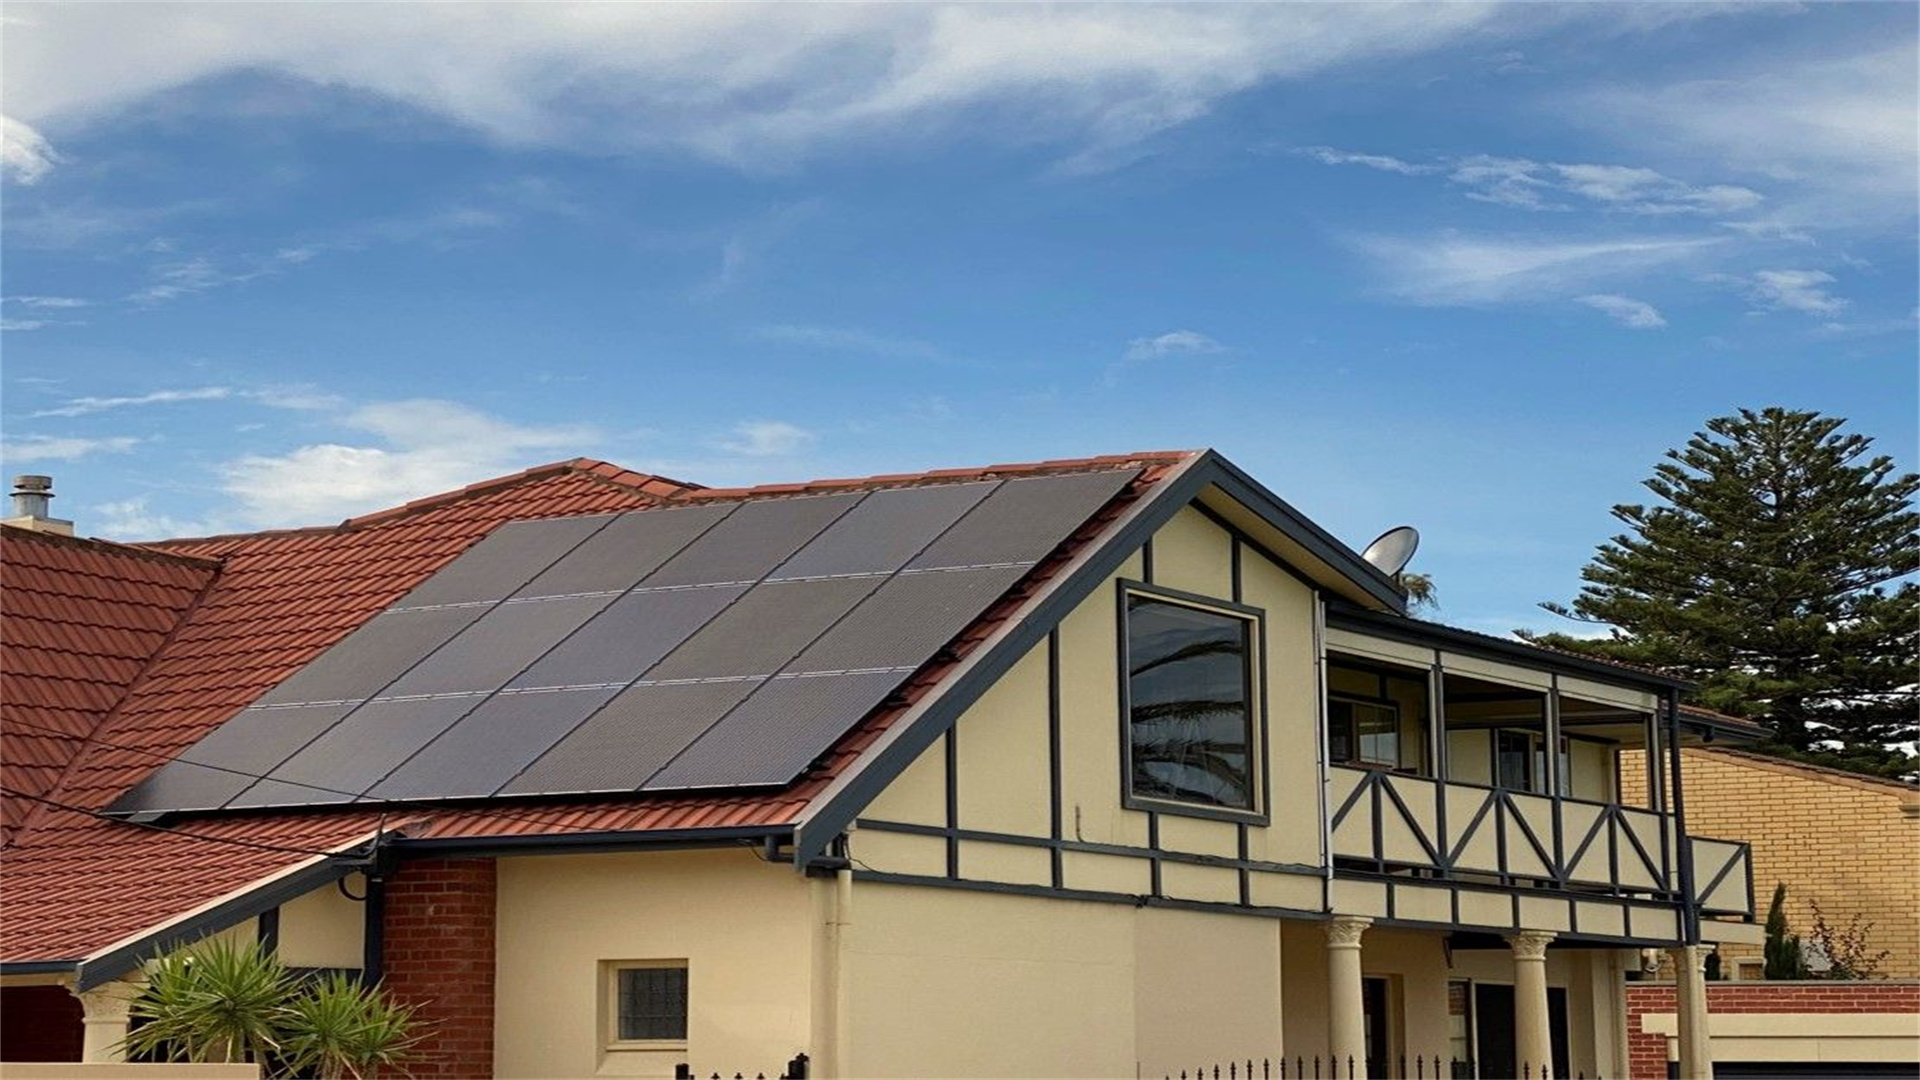 Adelaide, Australien – 9,9-kW-Haushaltsprojekt zur dezentralen Stromerzeugung auf dem Dach